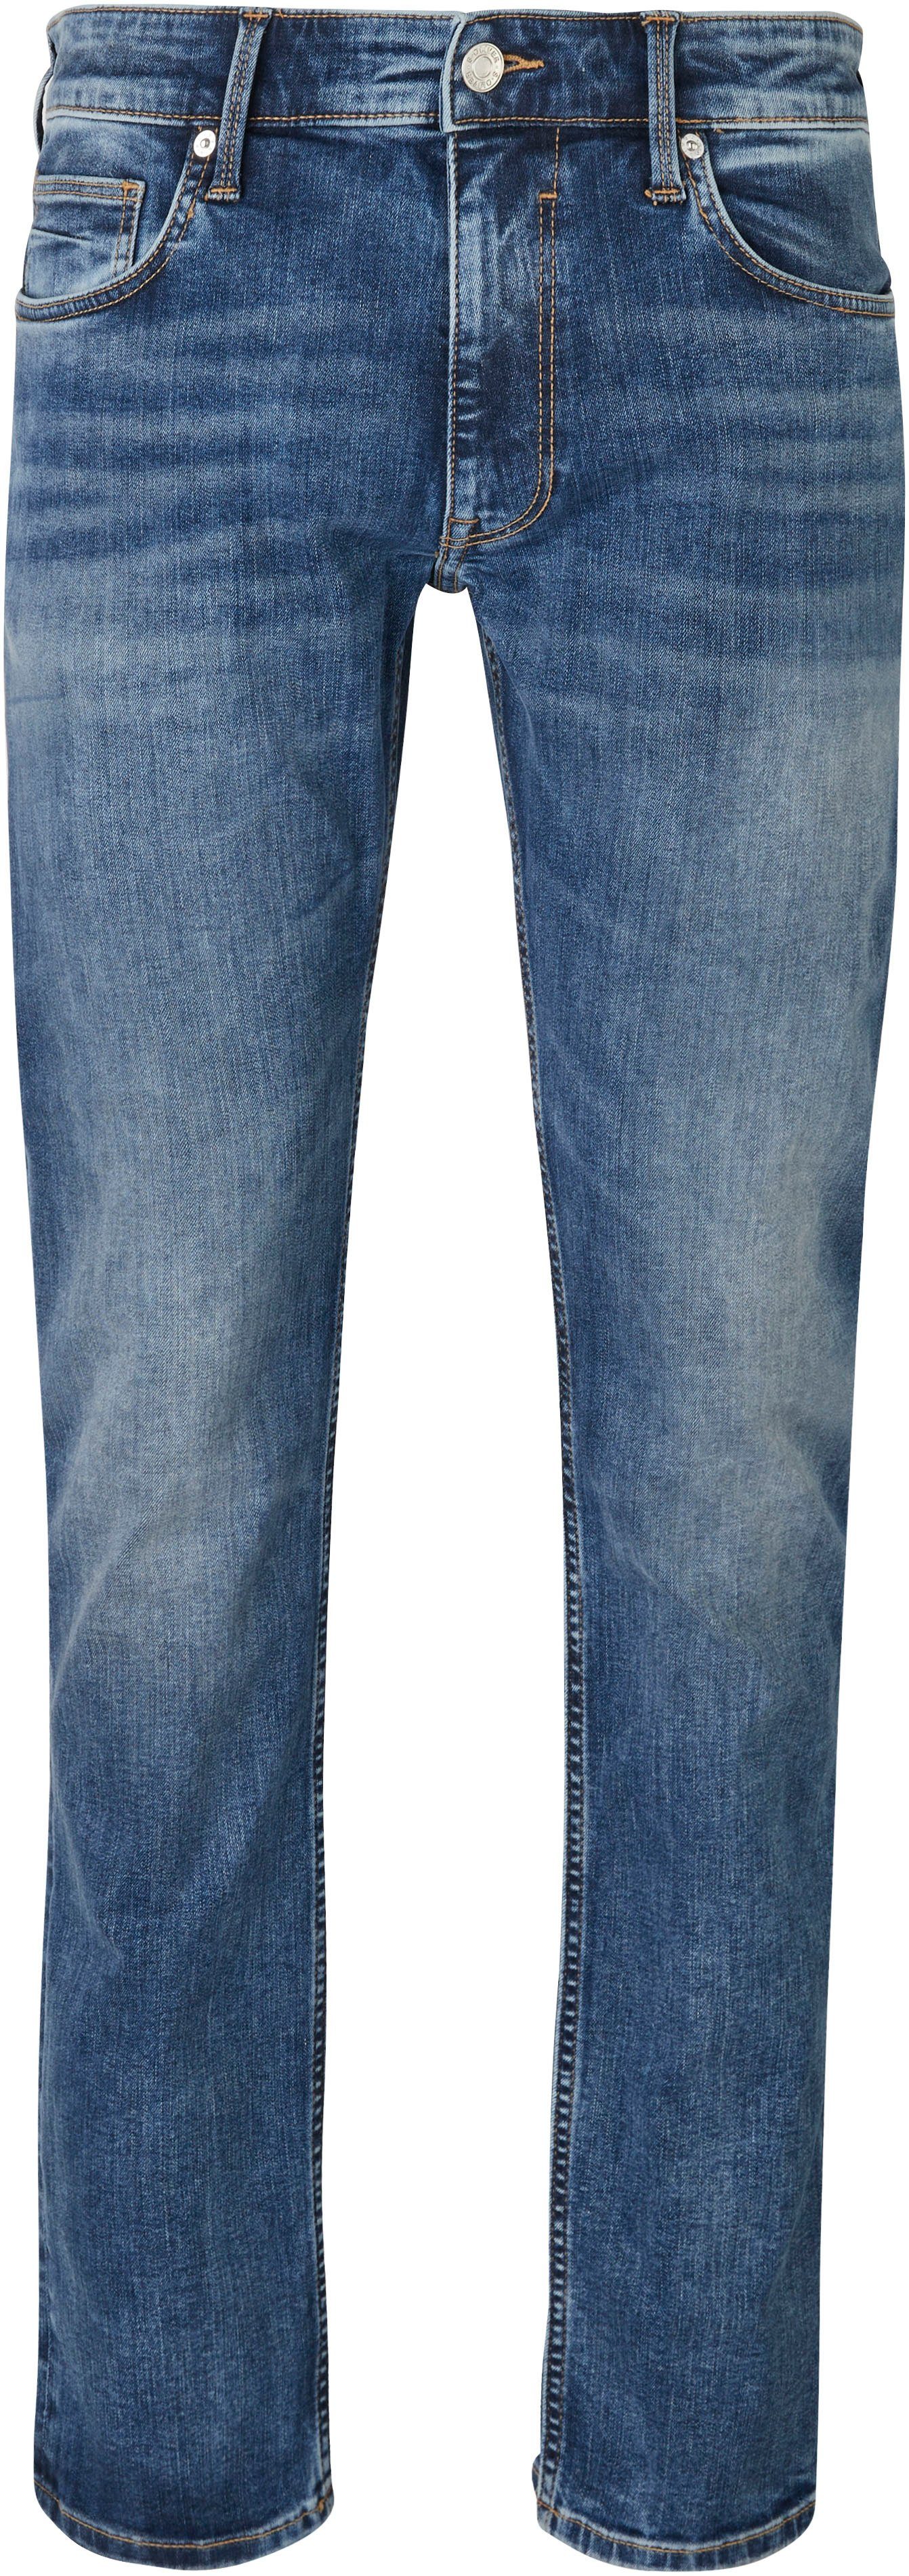 Jeans s.Oliver Bequeme mit blue Eingrifftaschen Gesäß- und mid 32